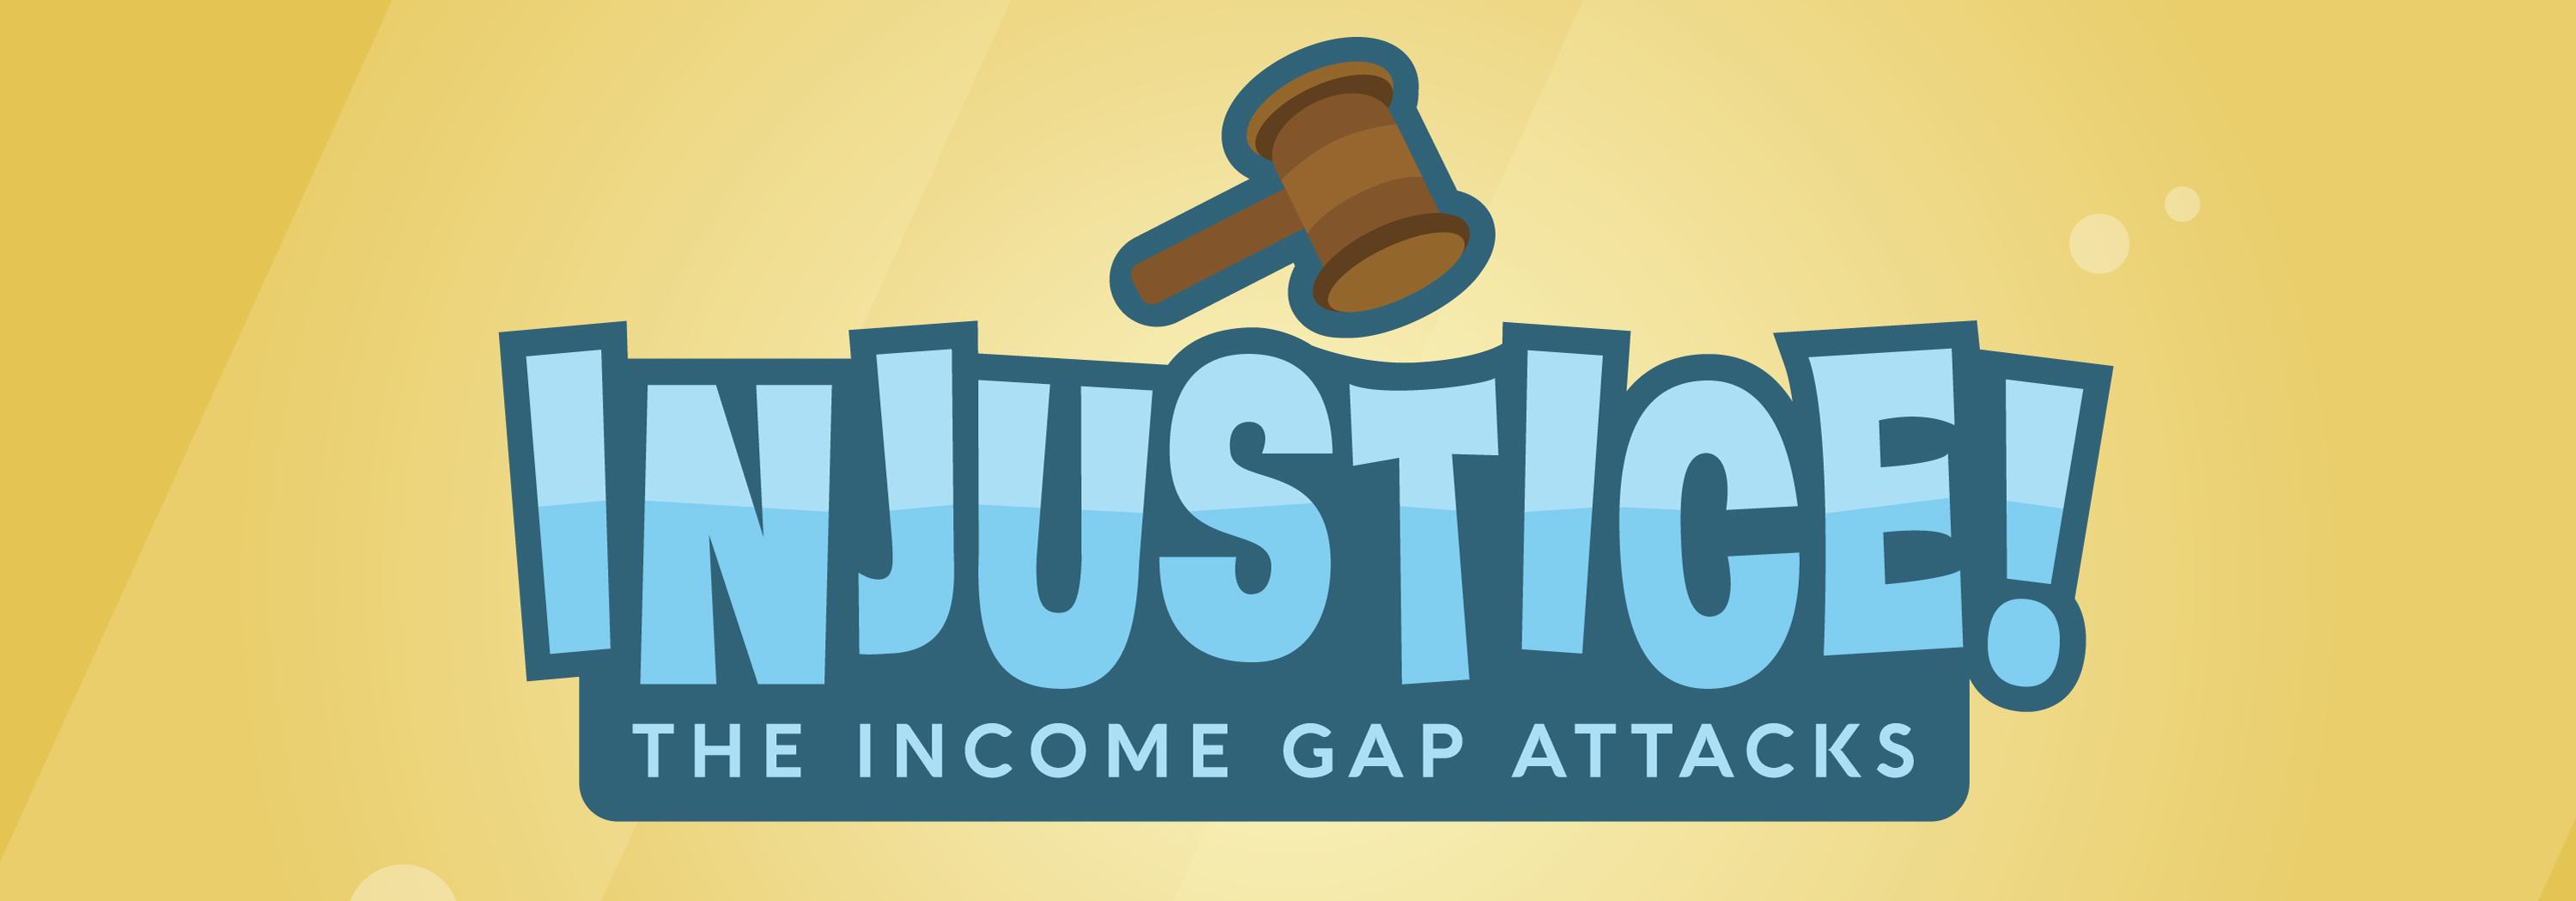 Injustice! The Income Gap Attacks